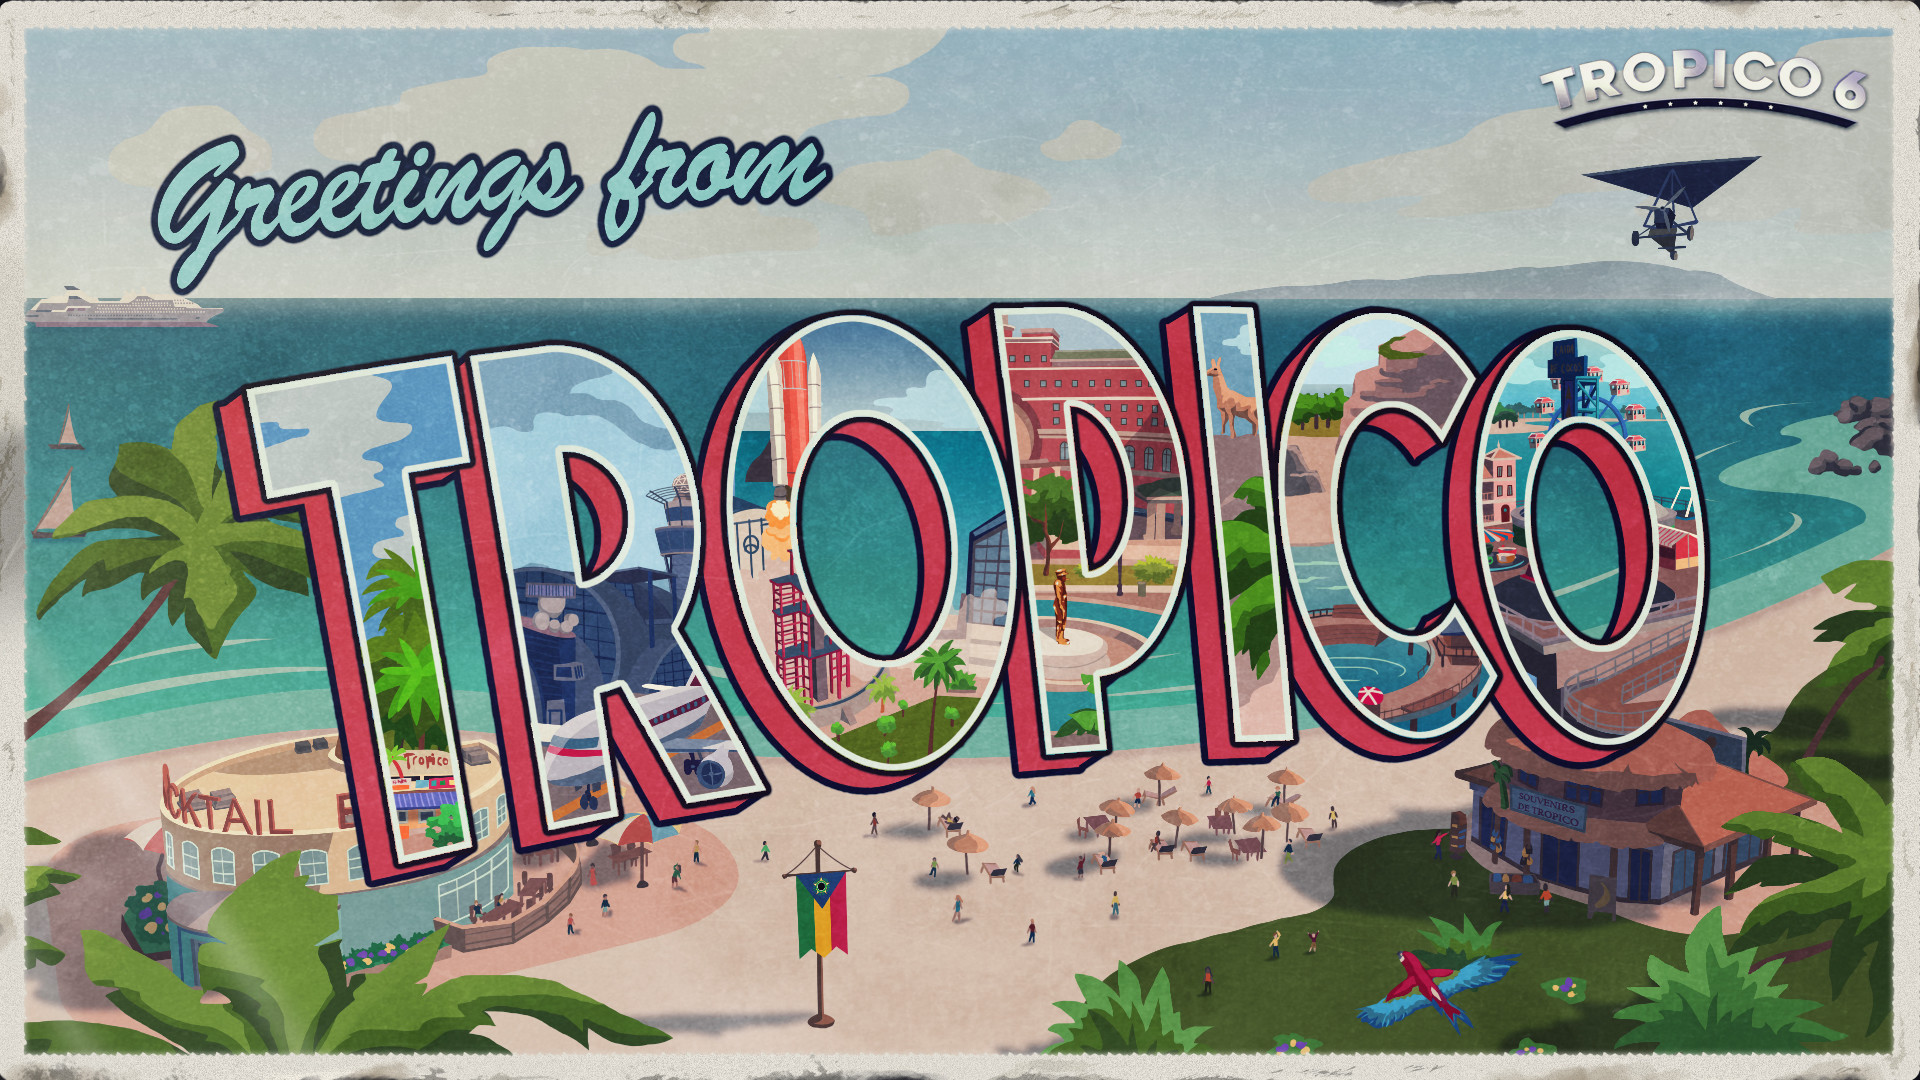 Tropico 6 - Original Soundtrack